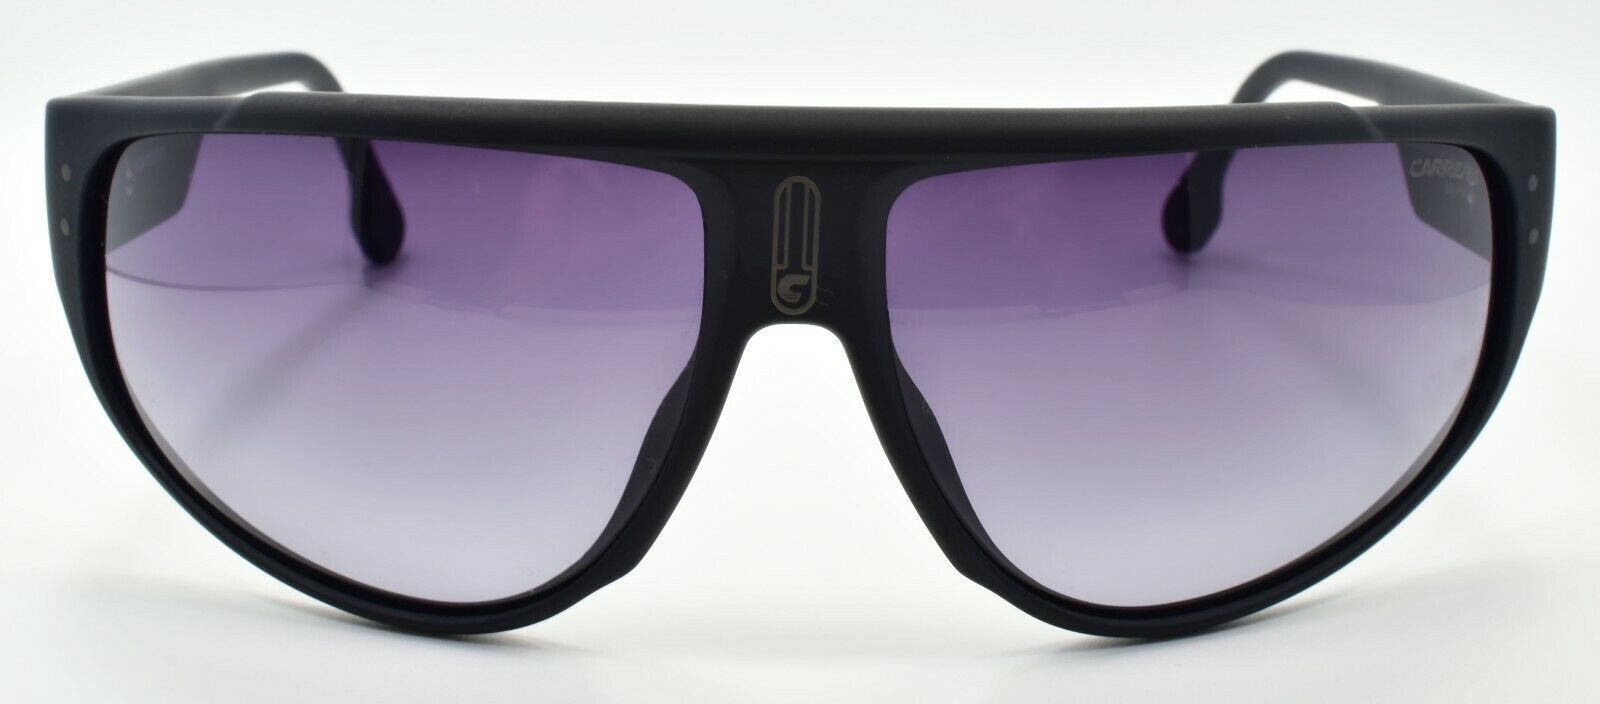 2-Carrera 1029/S EDM Men's Sunglasses 66-14-130 Black / Gray Gradient-716736230078-IKSpecs